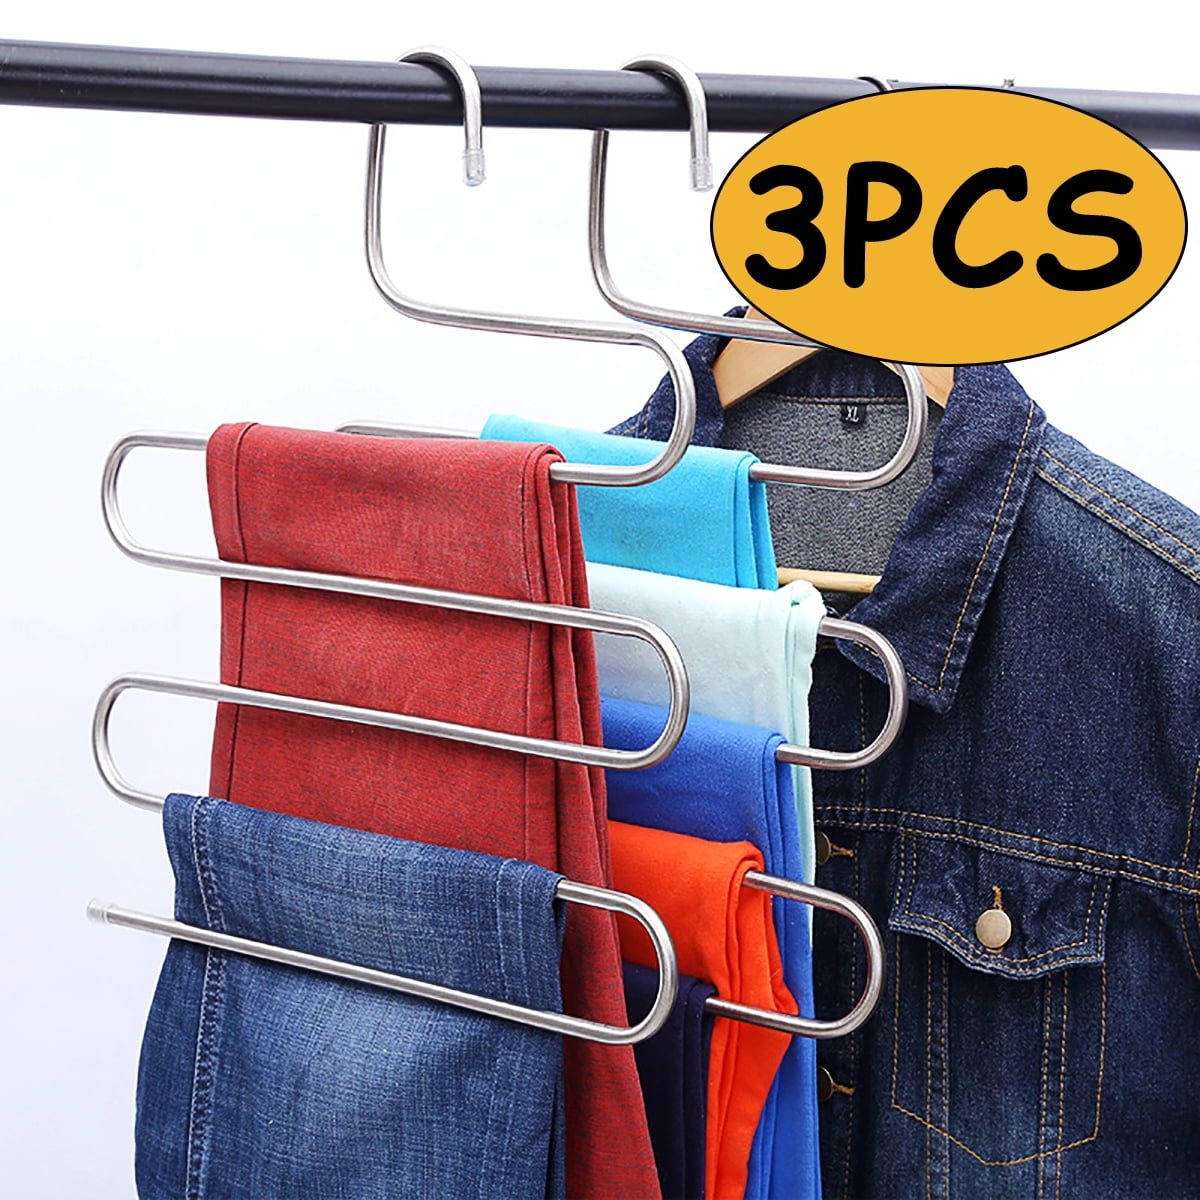 3PCS Wooden Pant Hanger Cabinet Suit Skirt Clothes Wood Hangers Set Home 